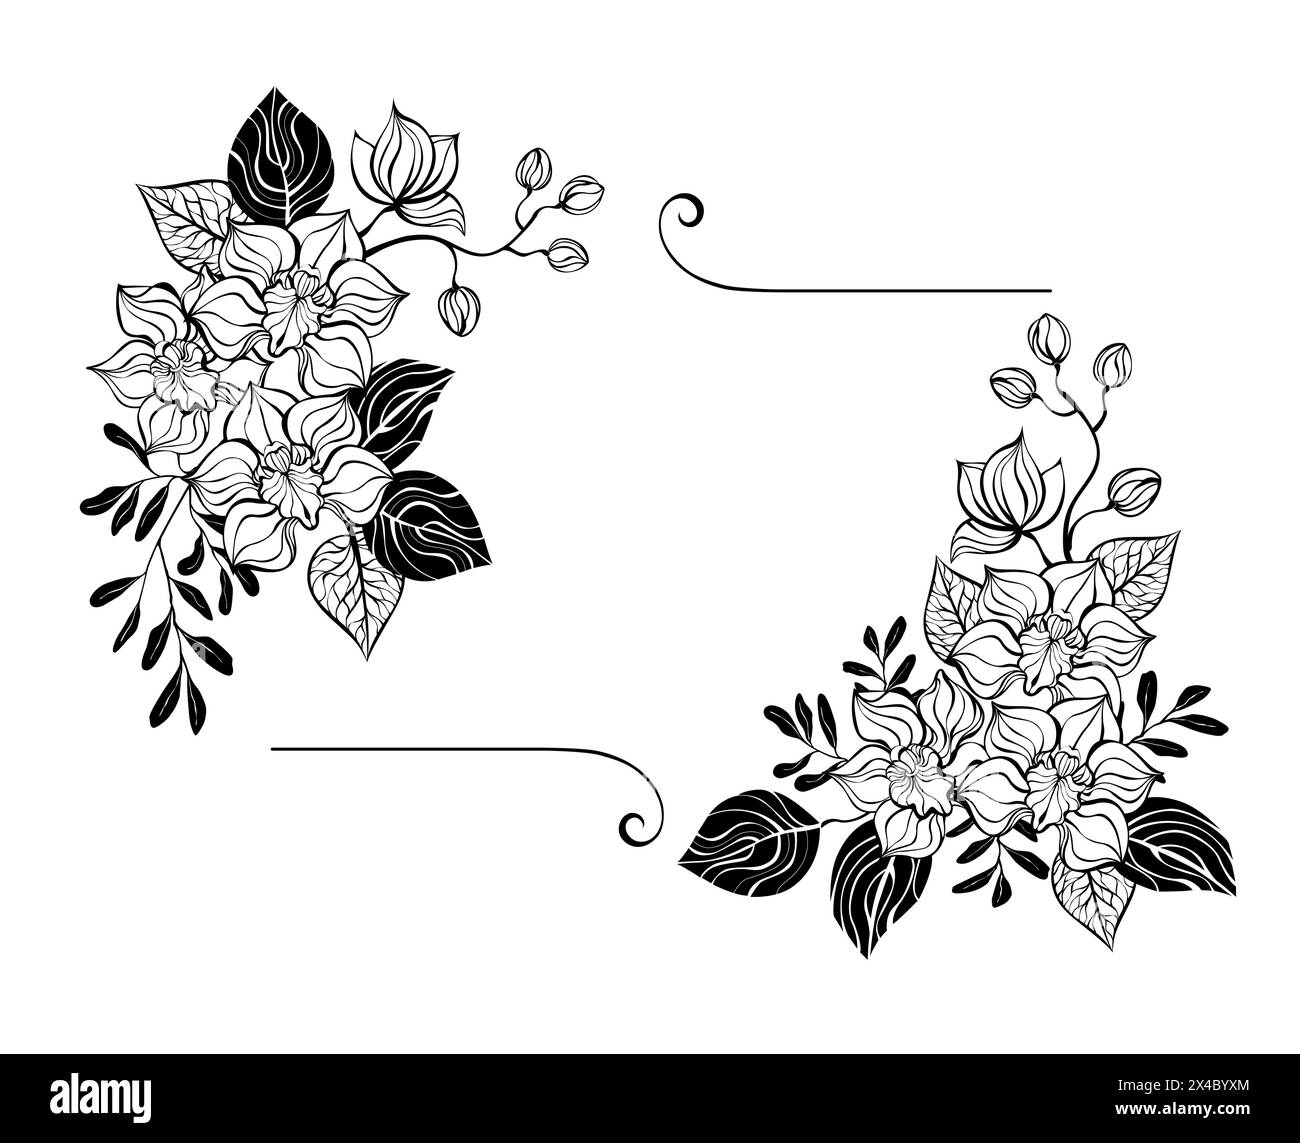 Composizione floreale rettangolare di orchidee sagomate artisticamente nere con pistacchio sagomato e ramoscelli di eucalipto su sfondo bianco. Con Illustrazione Vettoriale